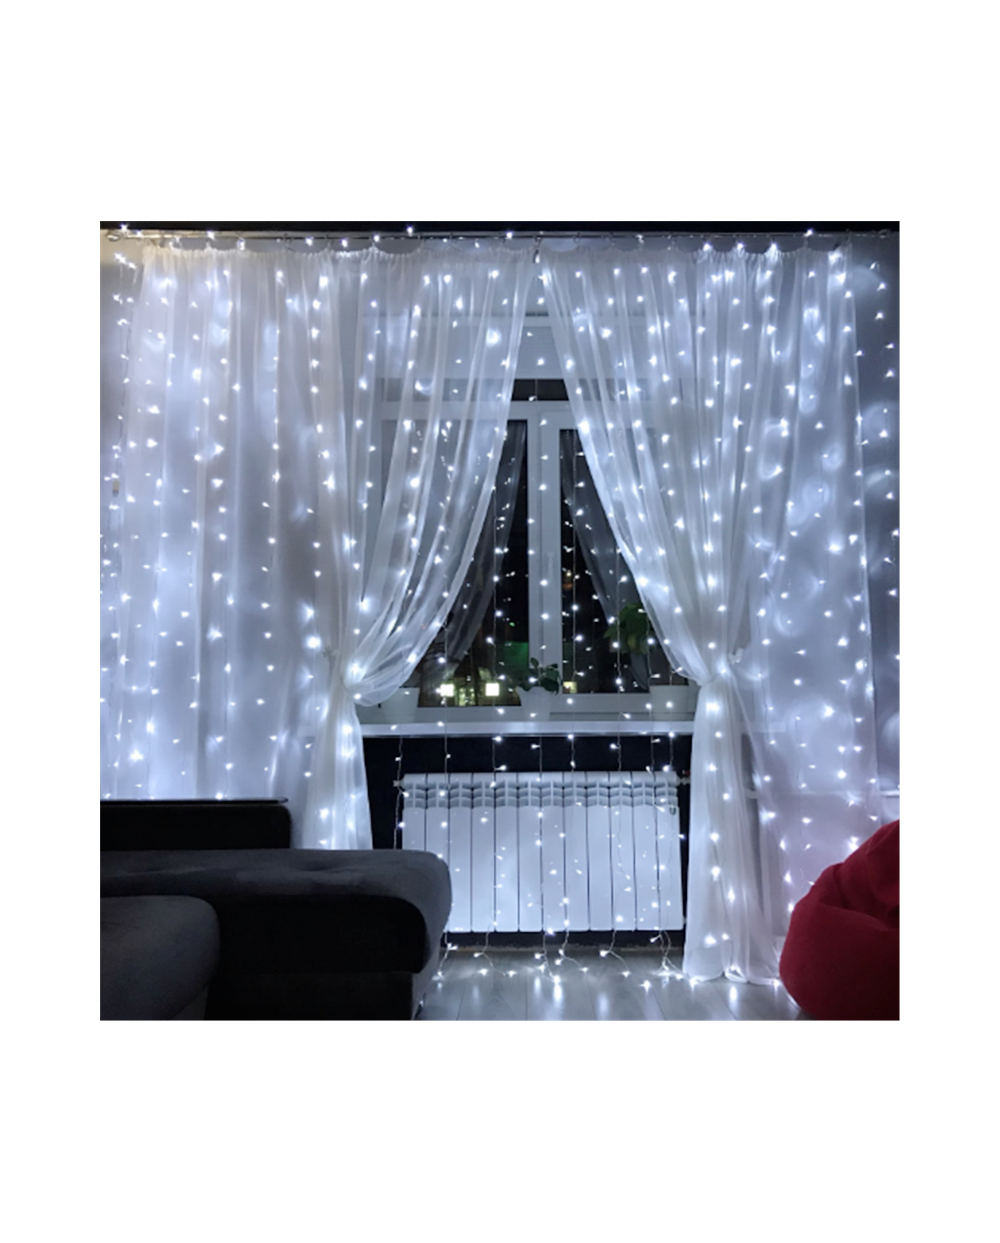 Κουρτίνα Χριστουγεννιάτικη Led 2m με 162 Λαμπάκια Λευκά με Πρόγραμμα, Διάφανο Καλώδιο 1,8m Ρεύματος ΟΕΜ 2183